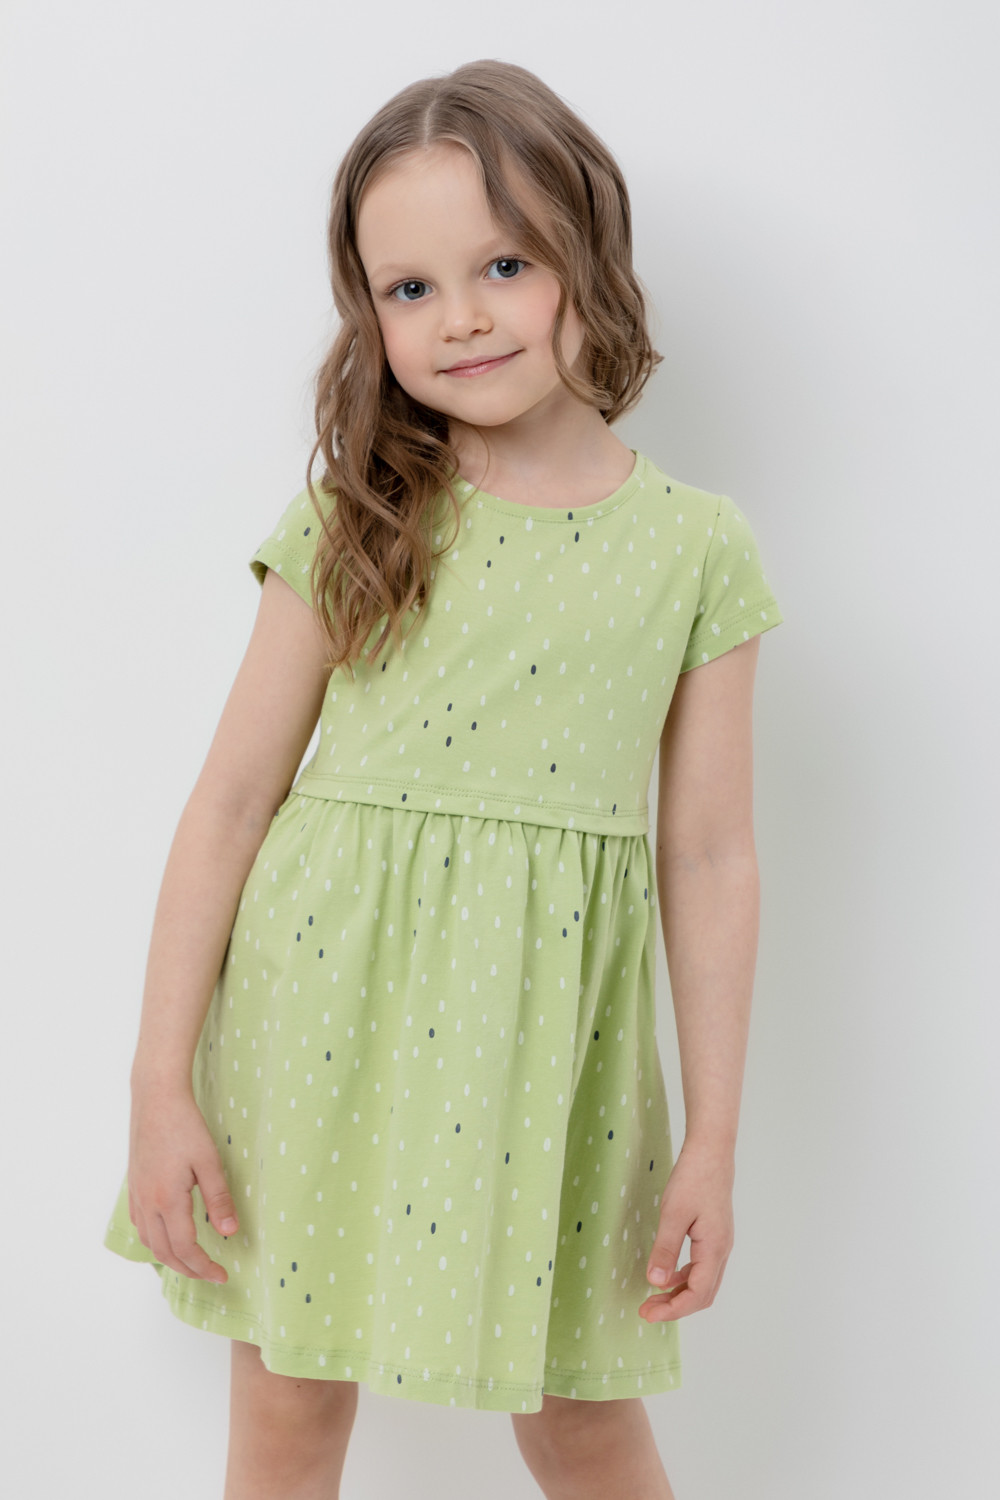 Платье детское CROCKID М 3252, сочный лайм, яркий горошек, 128